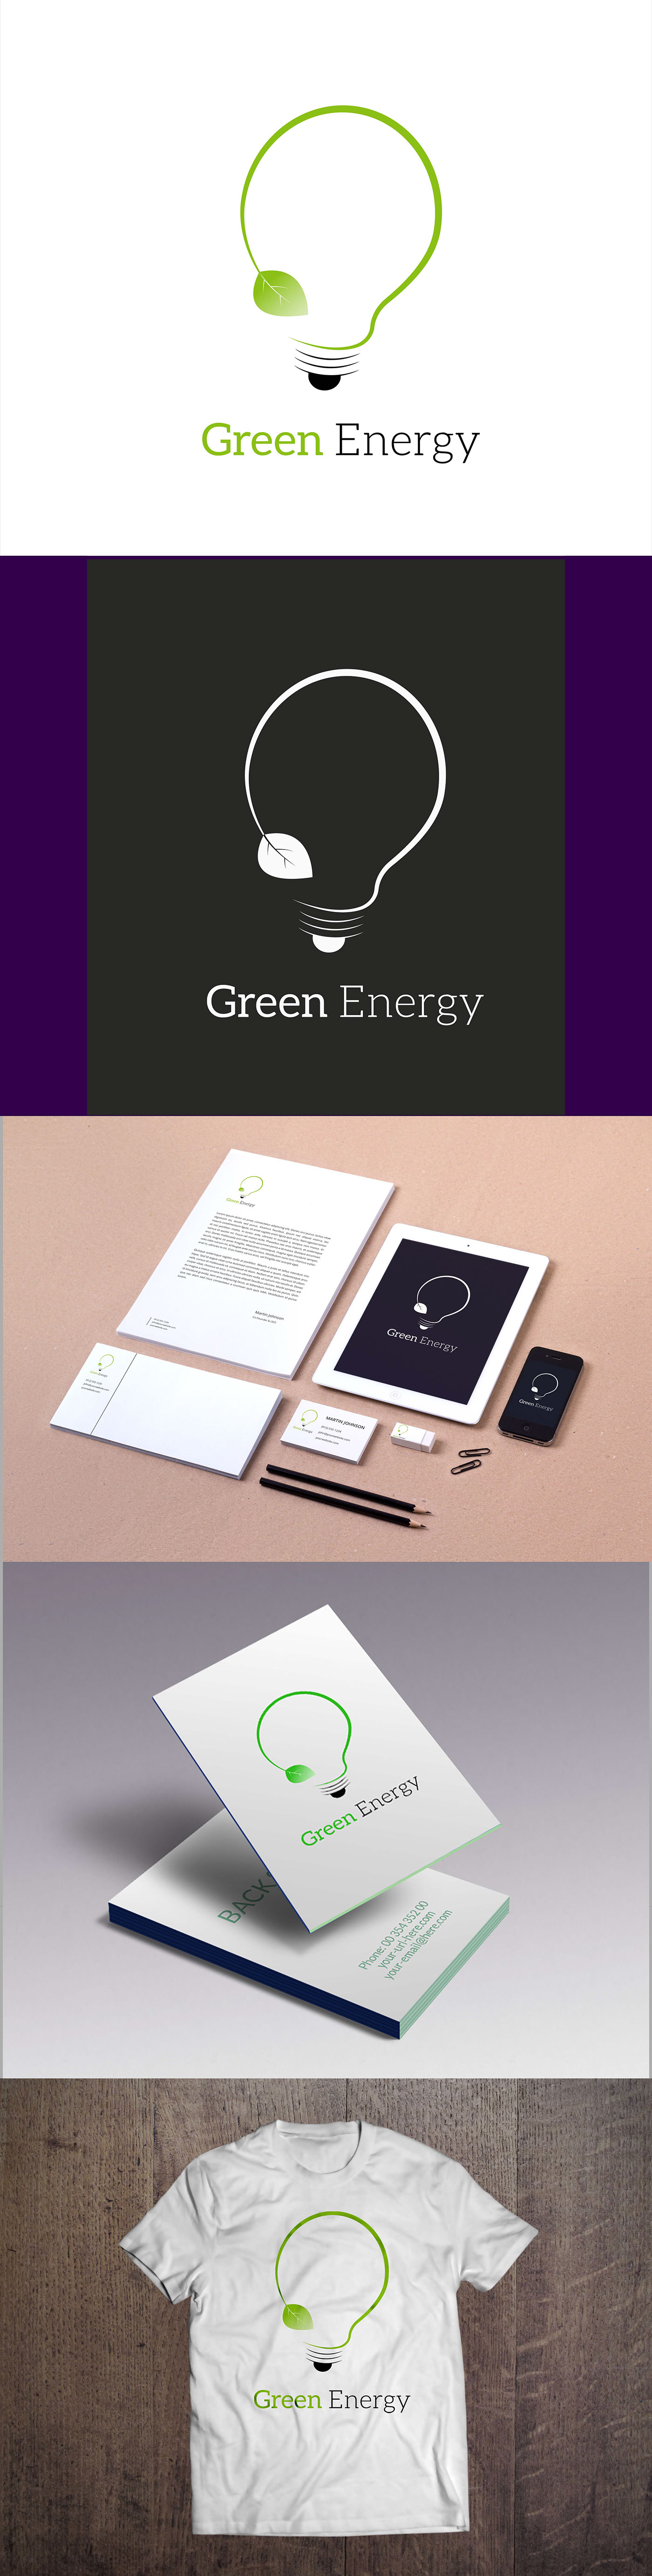 logo graphic design  Green Energy branding  brand identity artist Logo Design